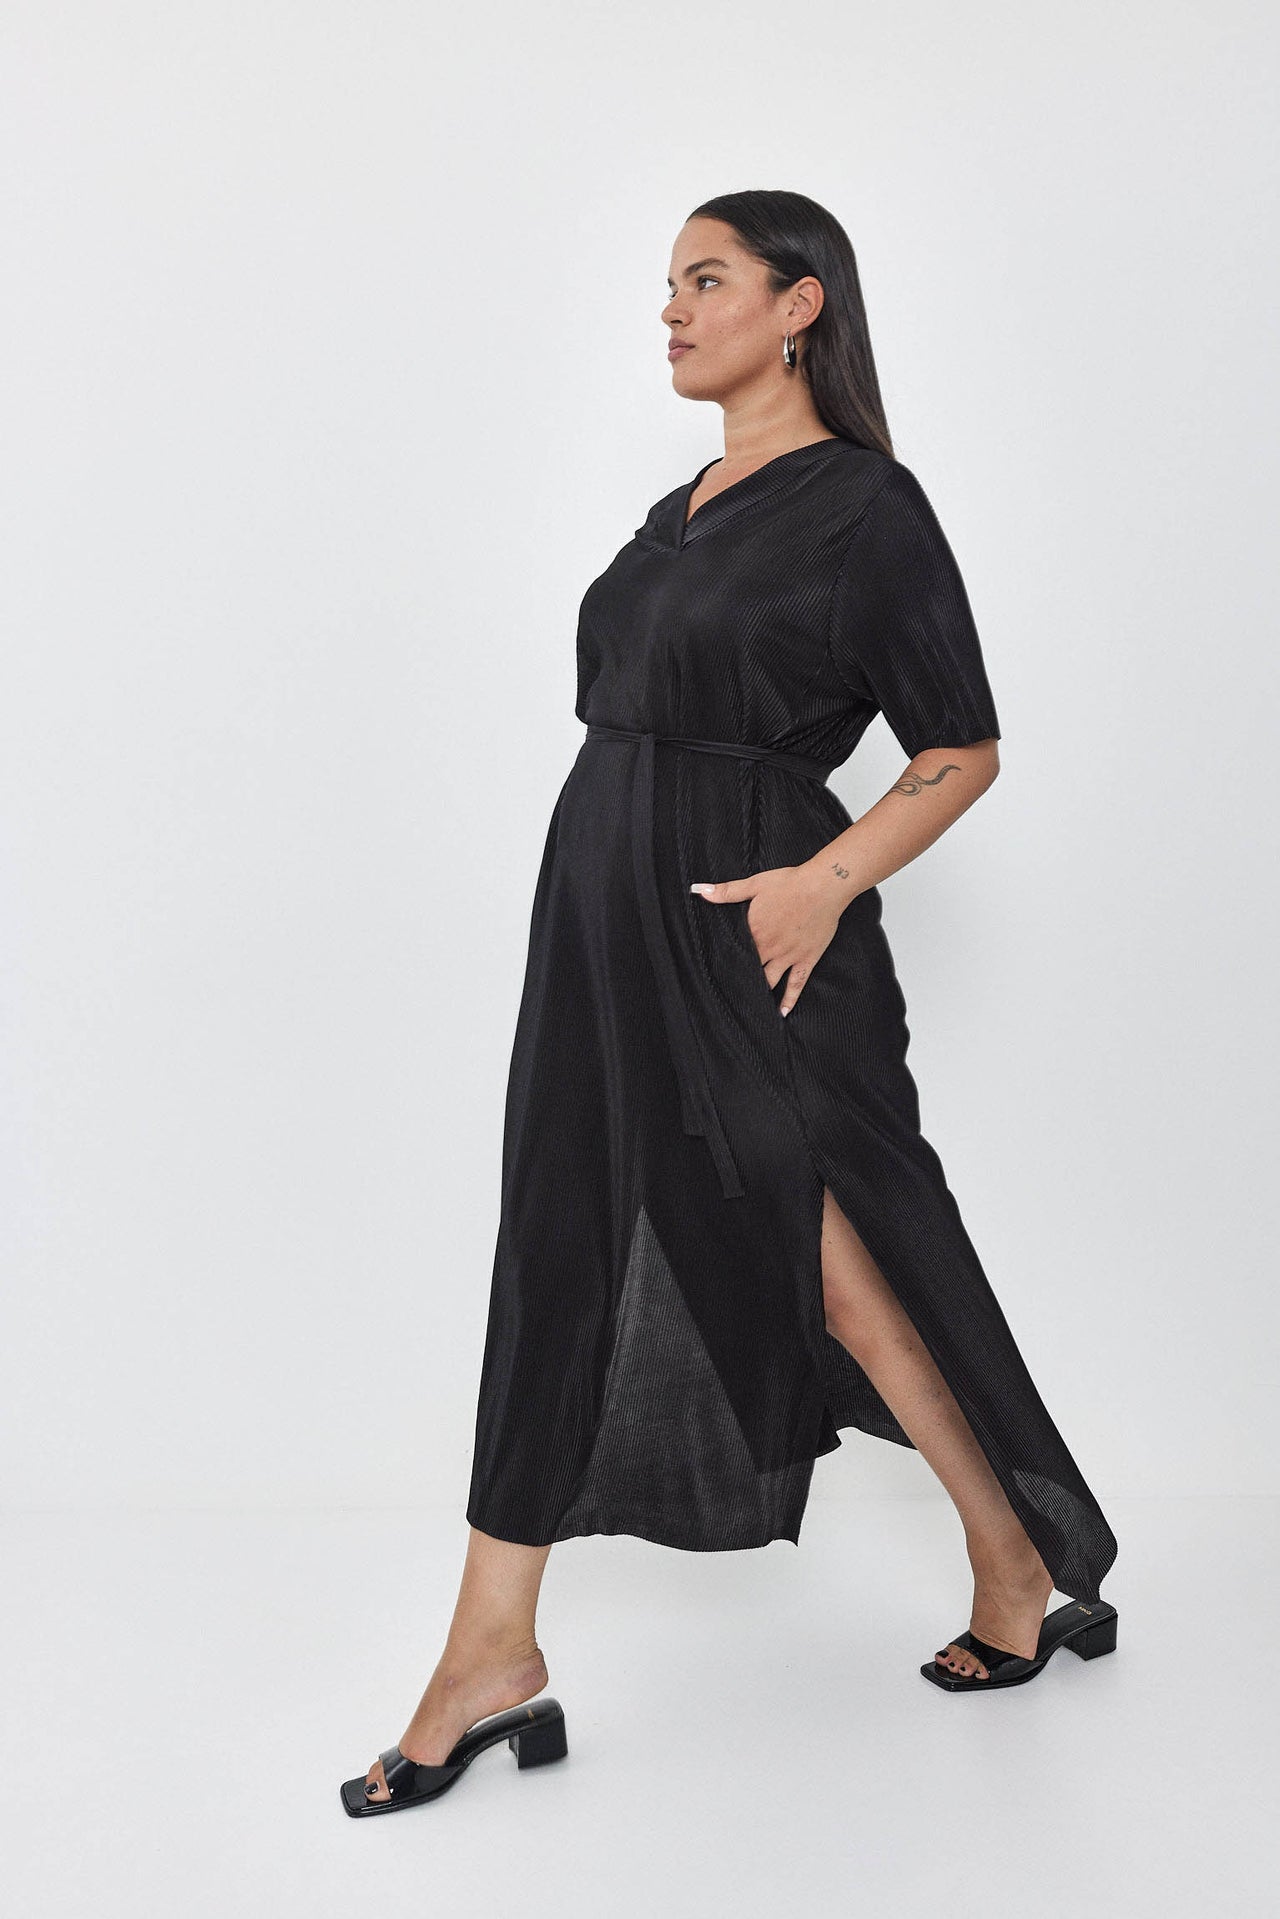 FLARE Dress S24 (L-XL) - Black